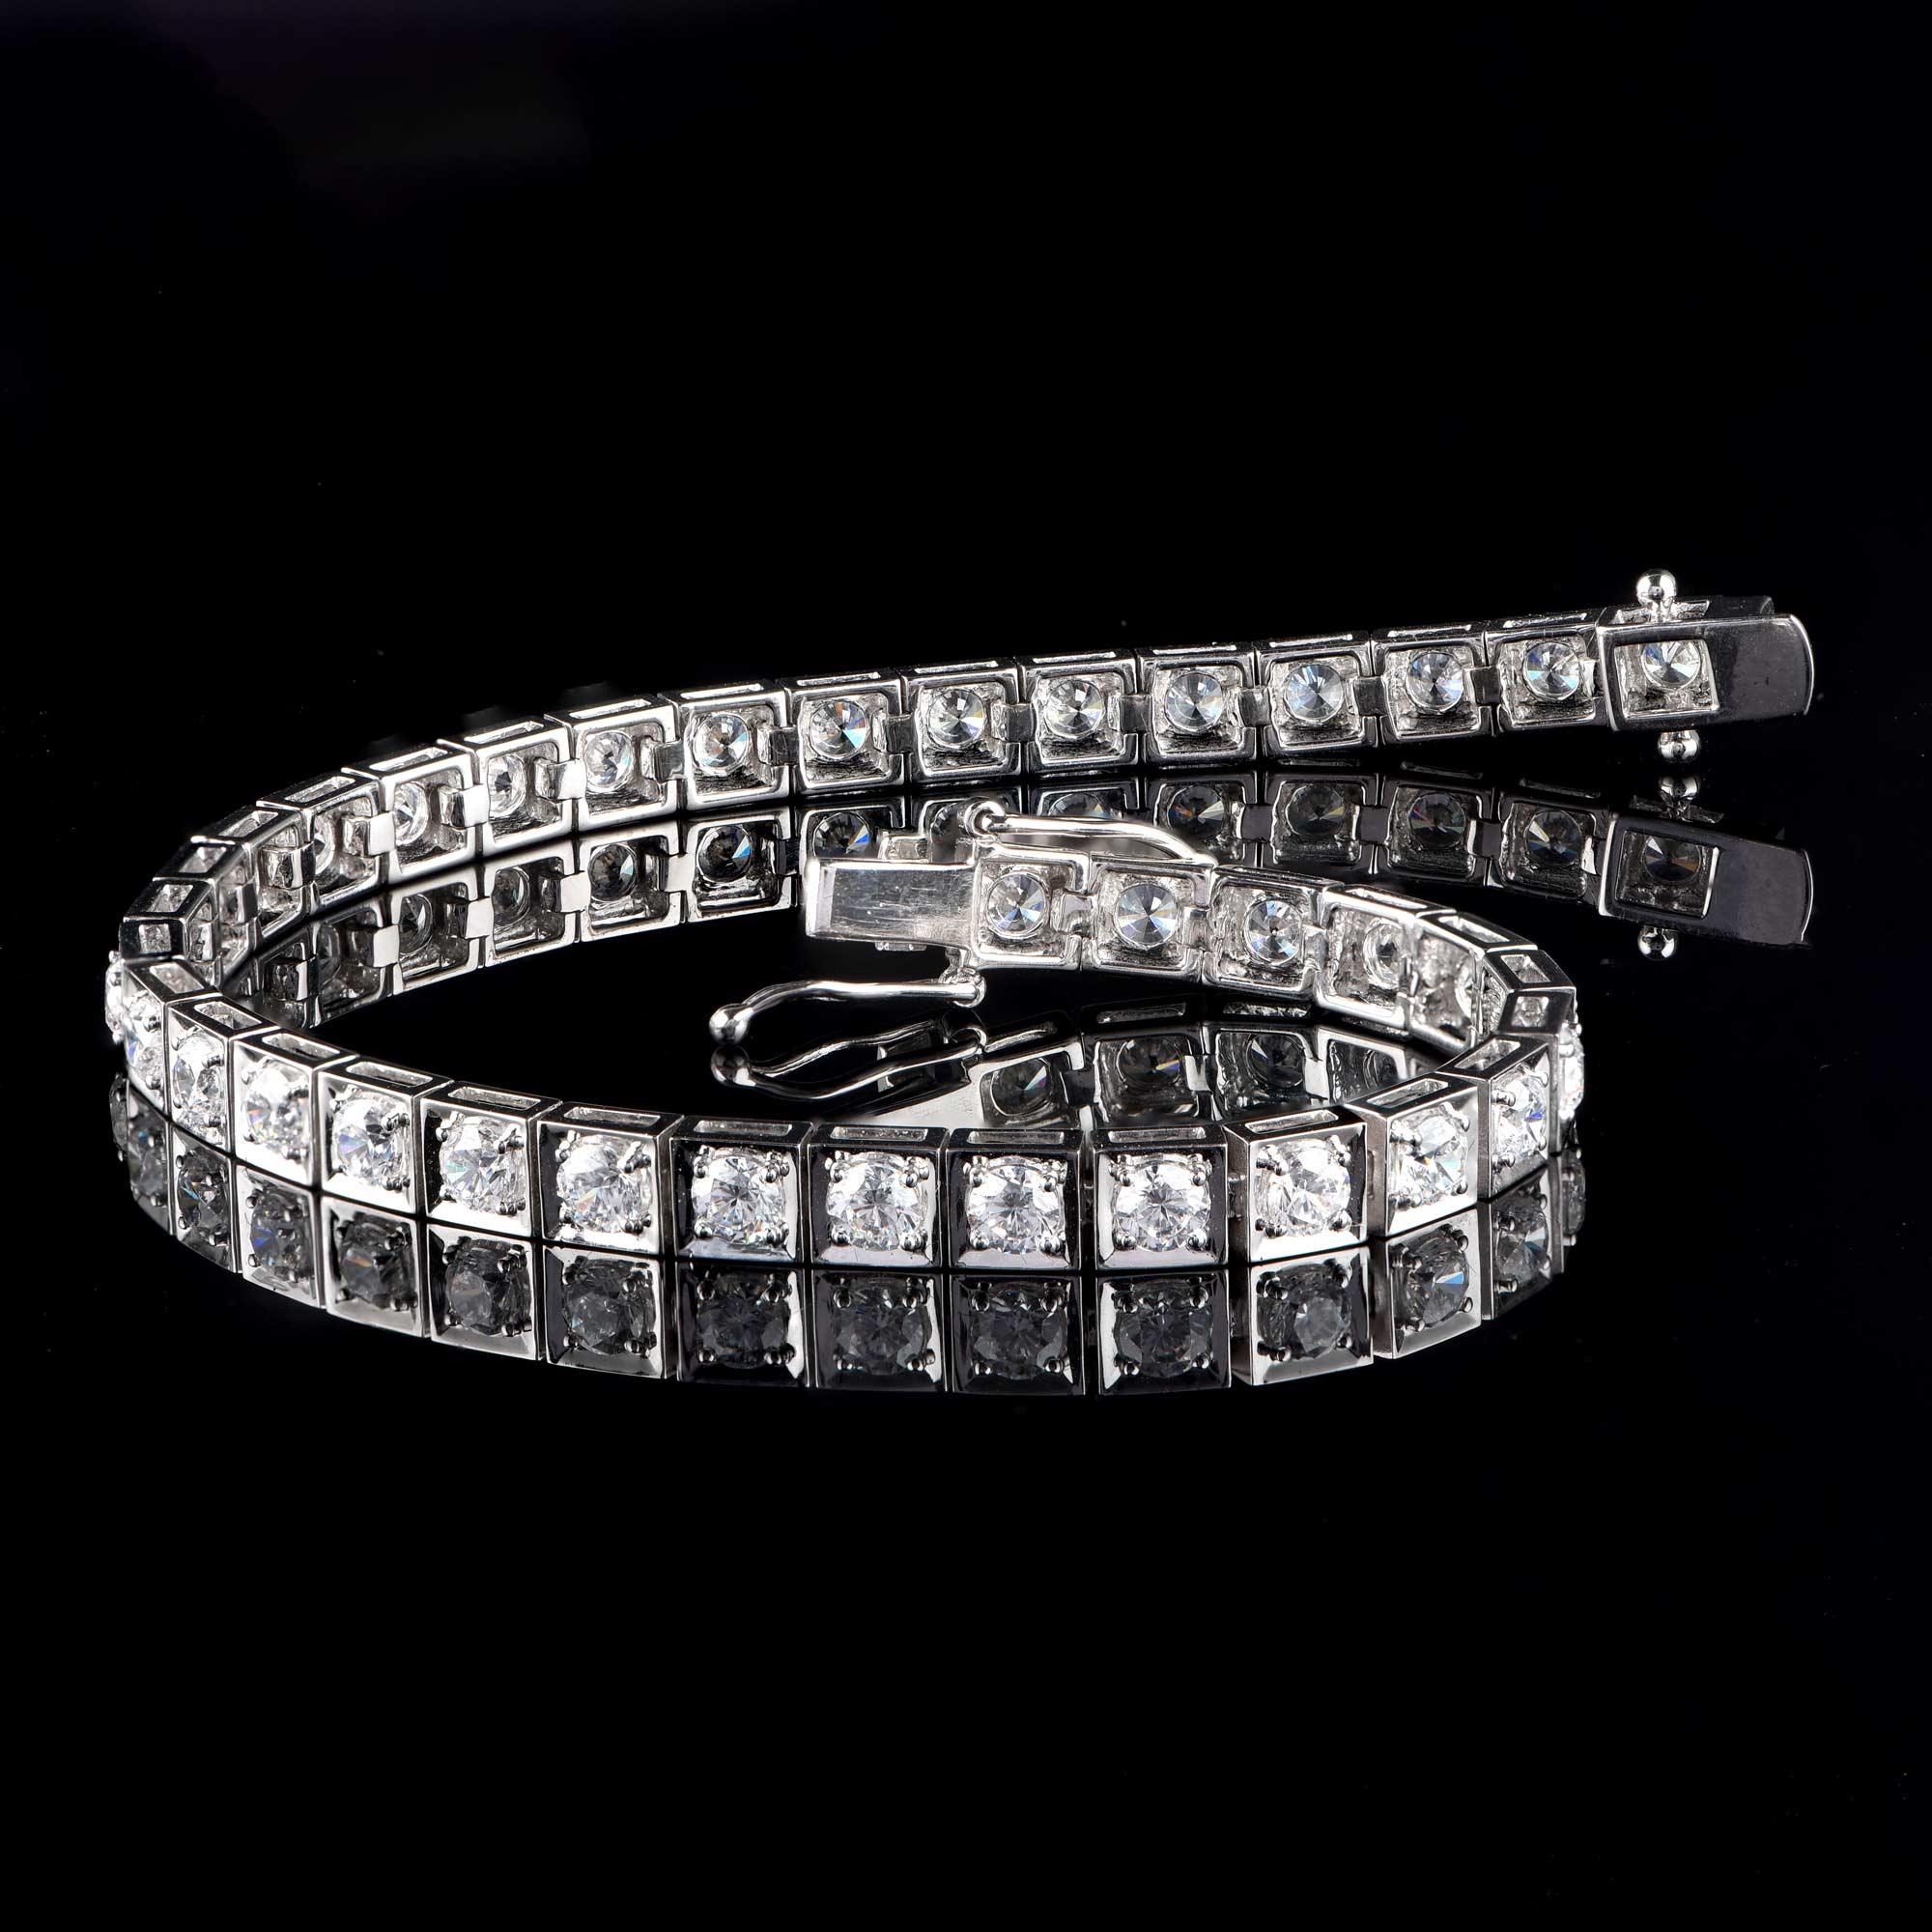 Dieses Designerarmband glänzt mit 37 Diamanten im Brillantschliff in Zackenfassung und einem eleganten Design aus 18 Karat Weißgold. Die Diamanten sind mit H-I Farbe, I2 Reinheit bewertet. 

Dieses Stück wird auf Bestellung gefertigt, bitte rechnen